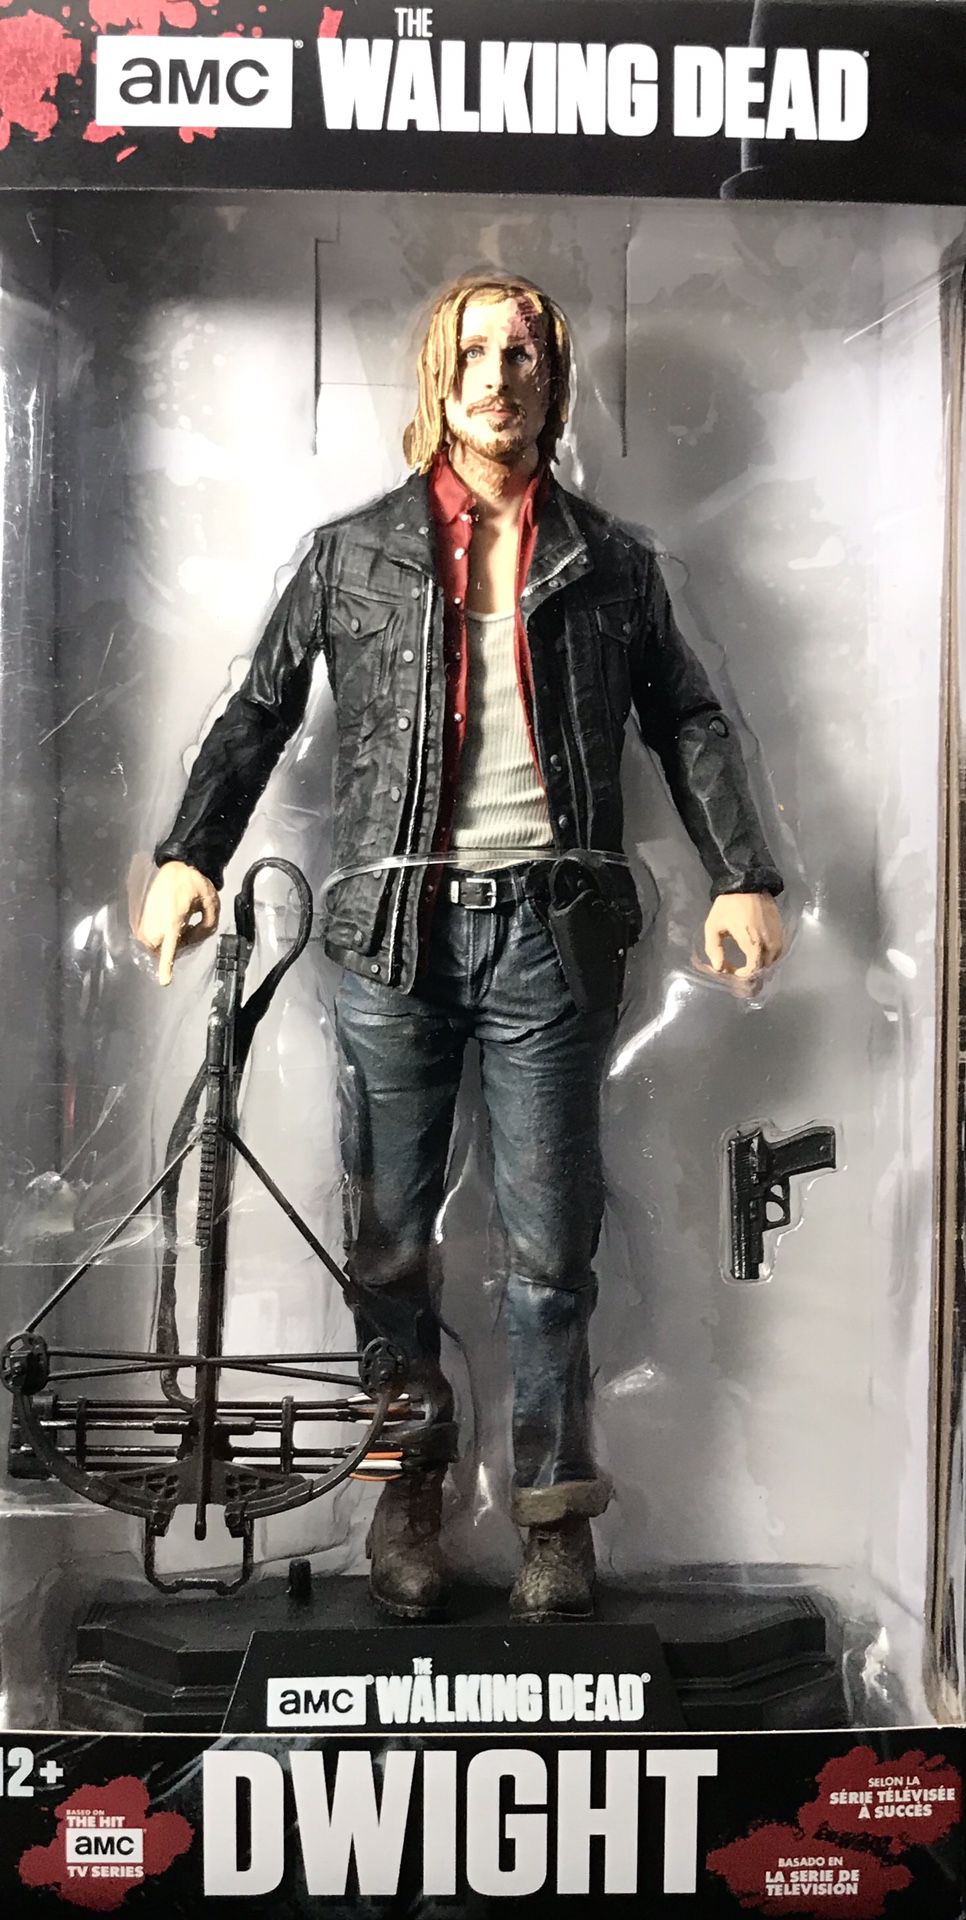 The Walking Dead DWIGHT 7 inch figure